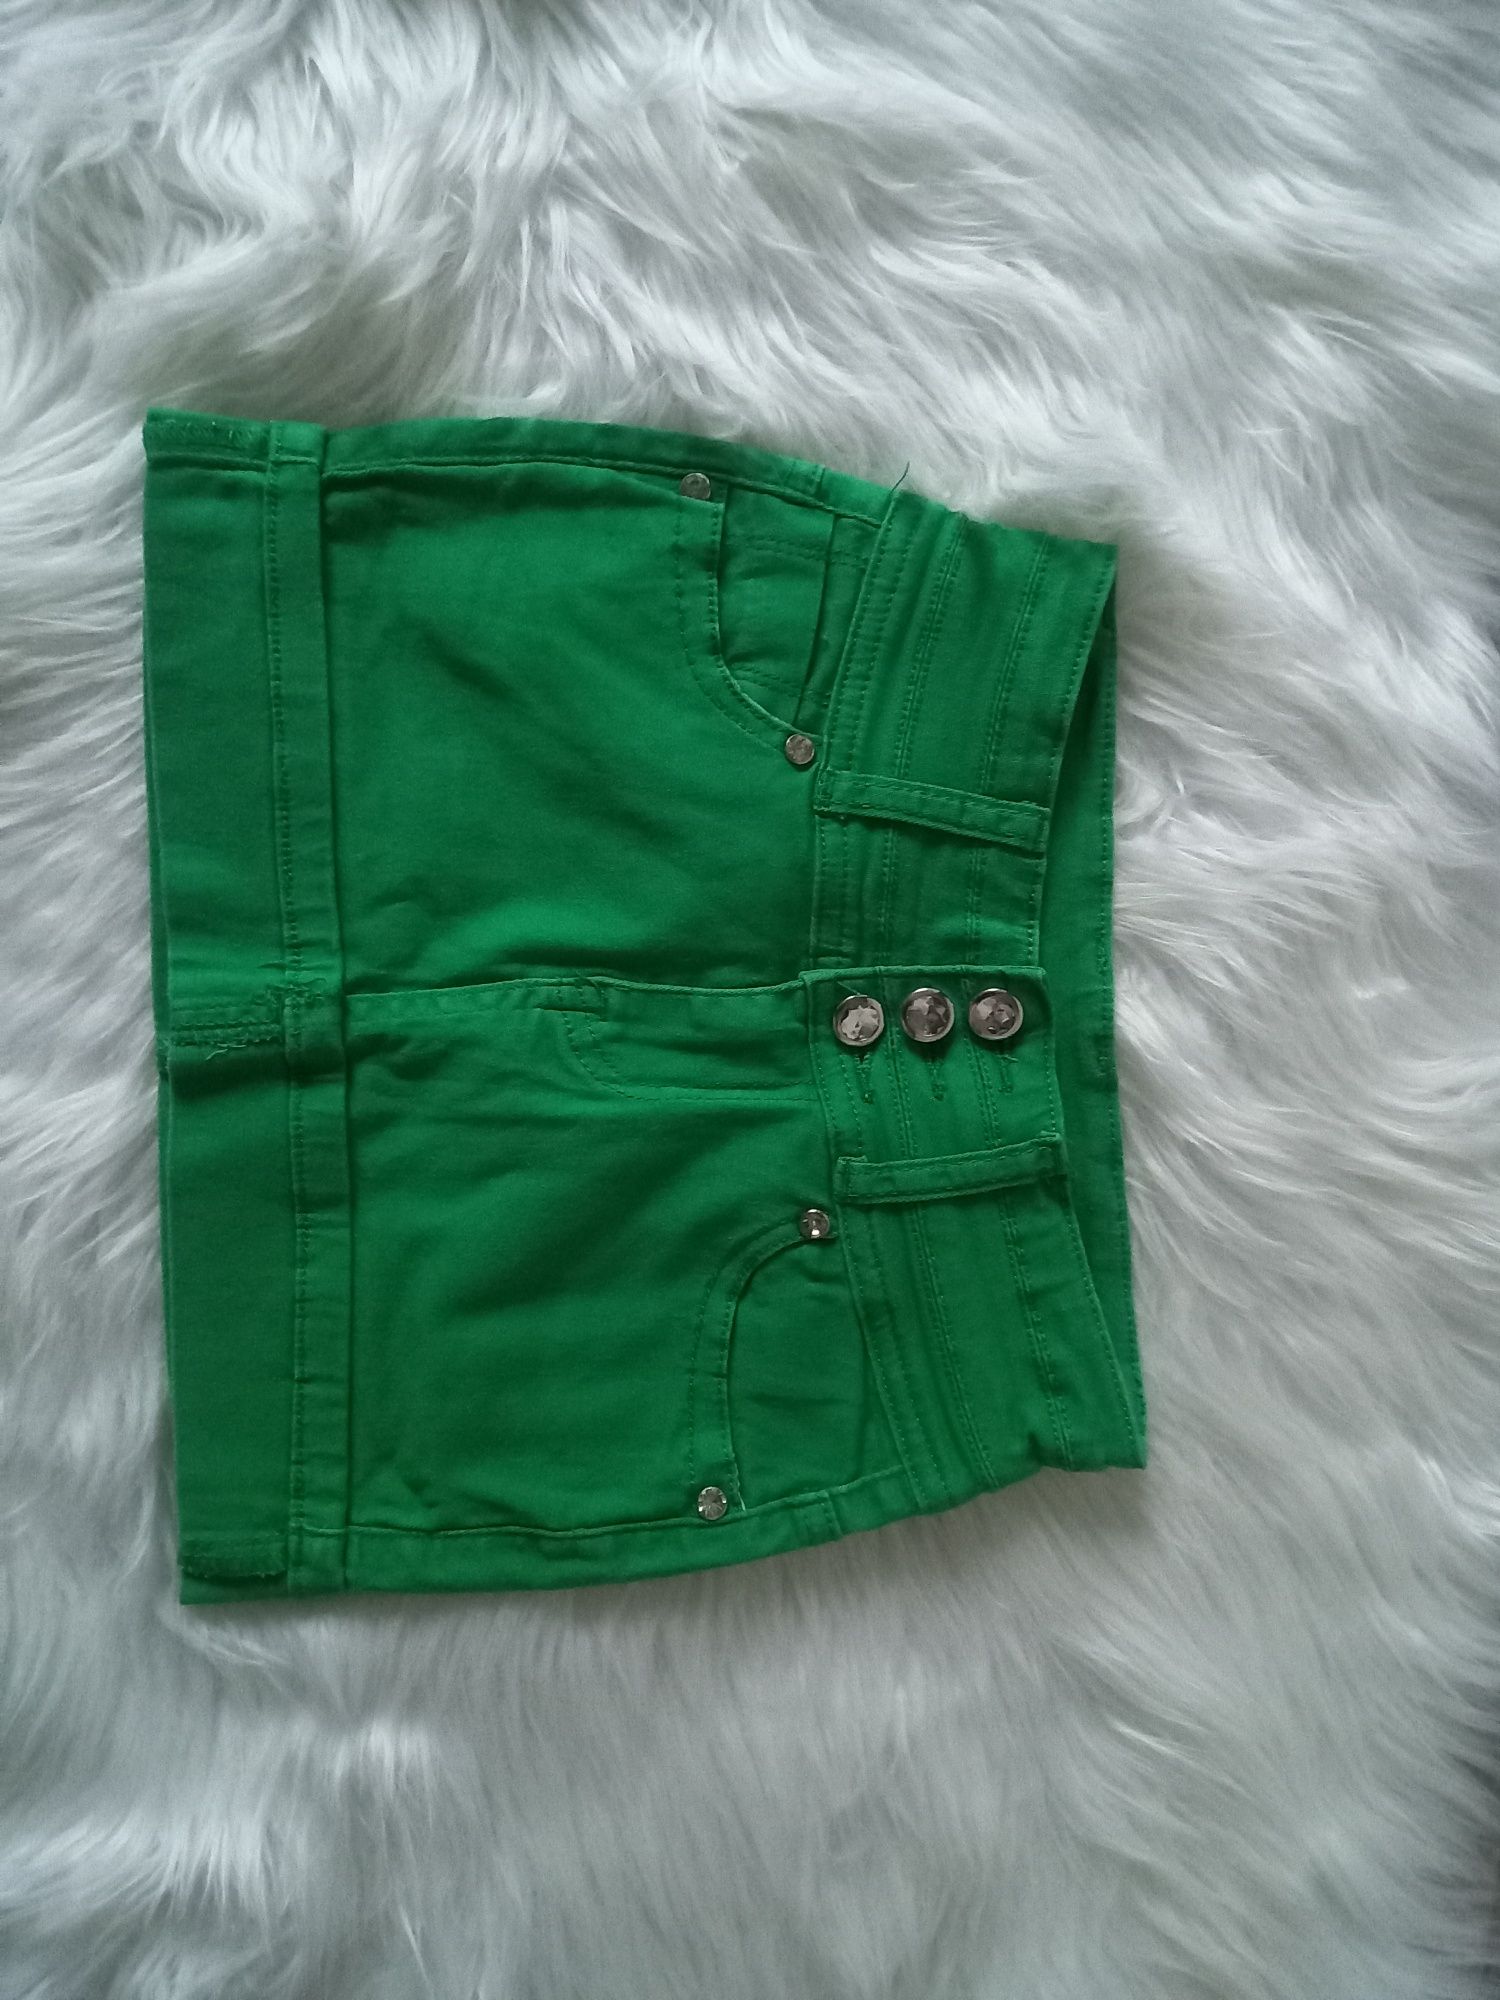 Spódniczka mini zielona 4-5 lat 110 cm Pebo Jeans